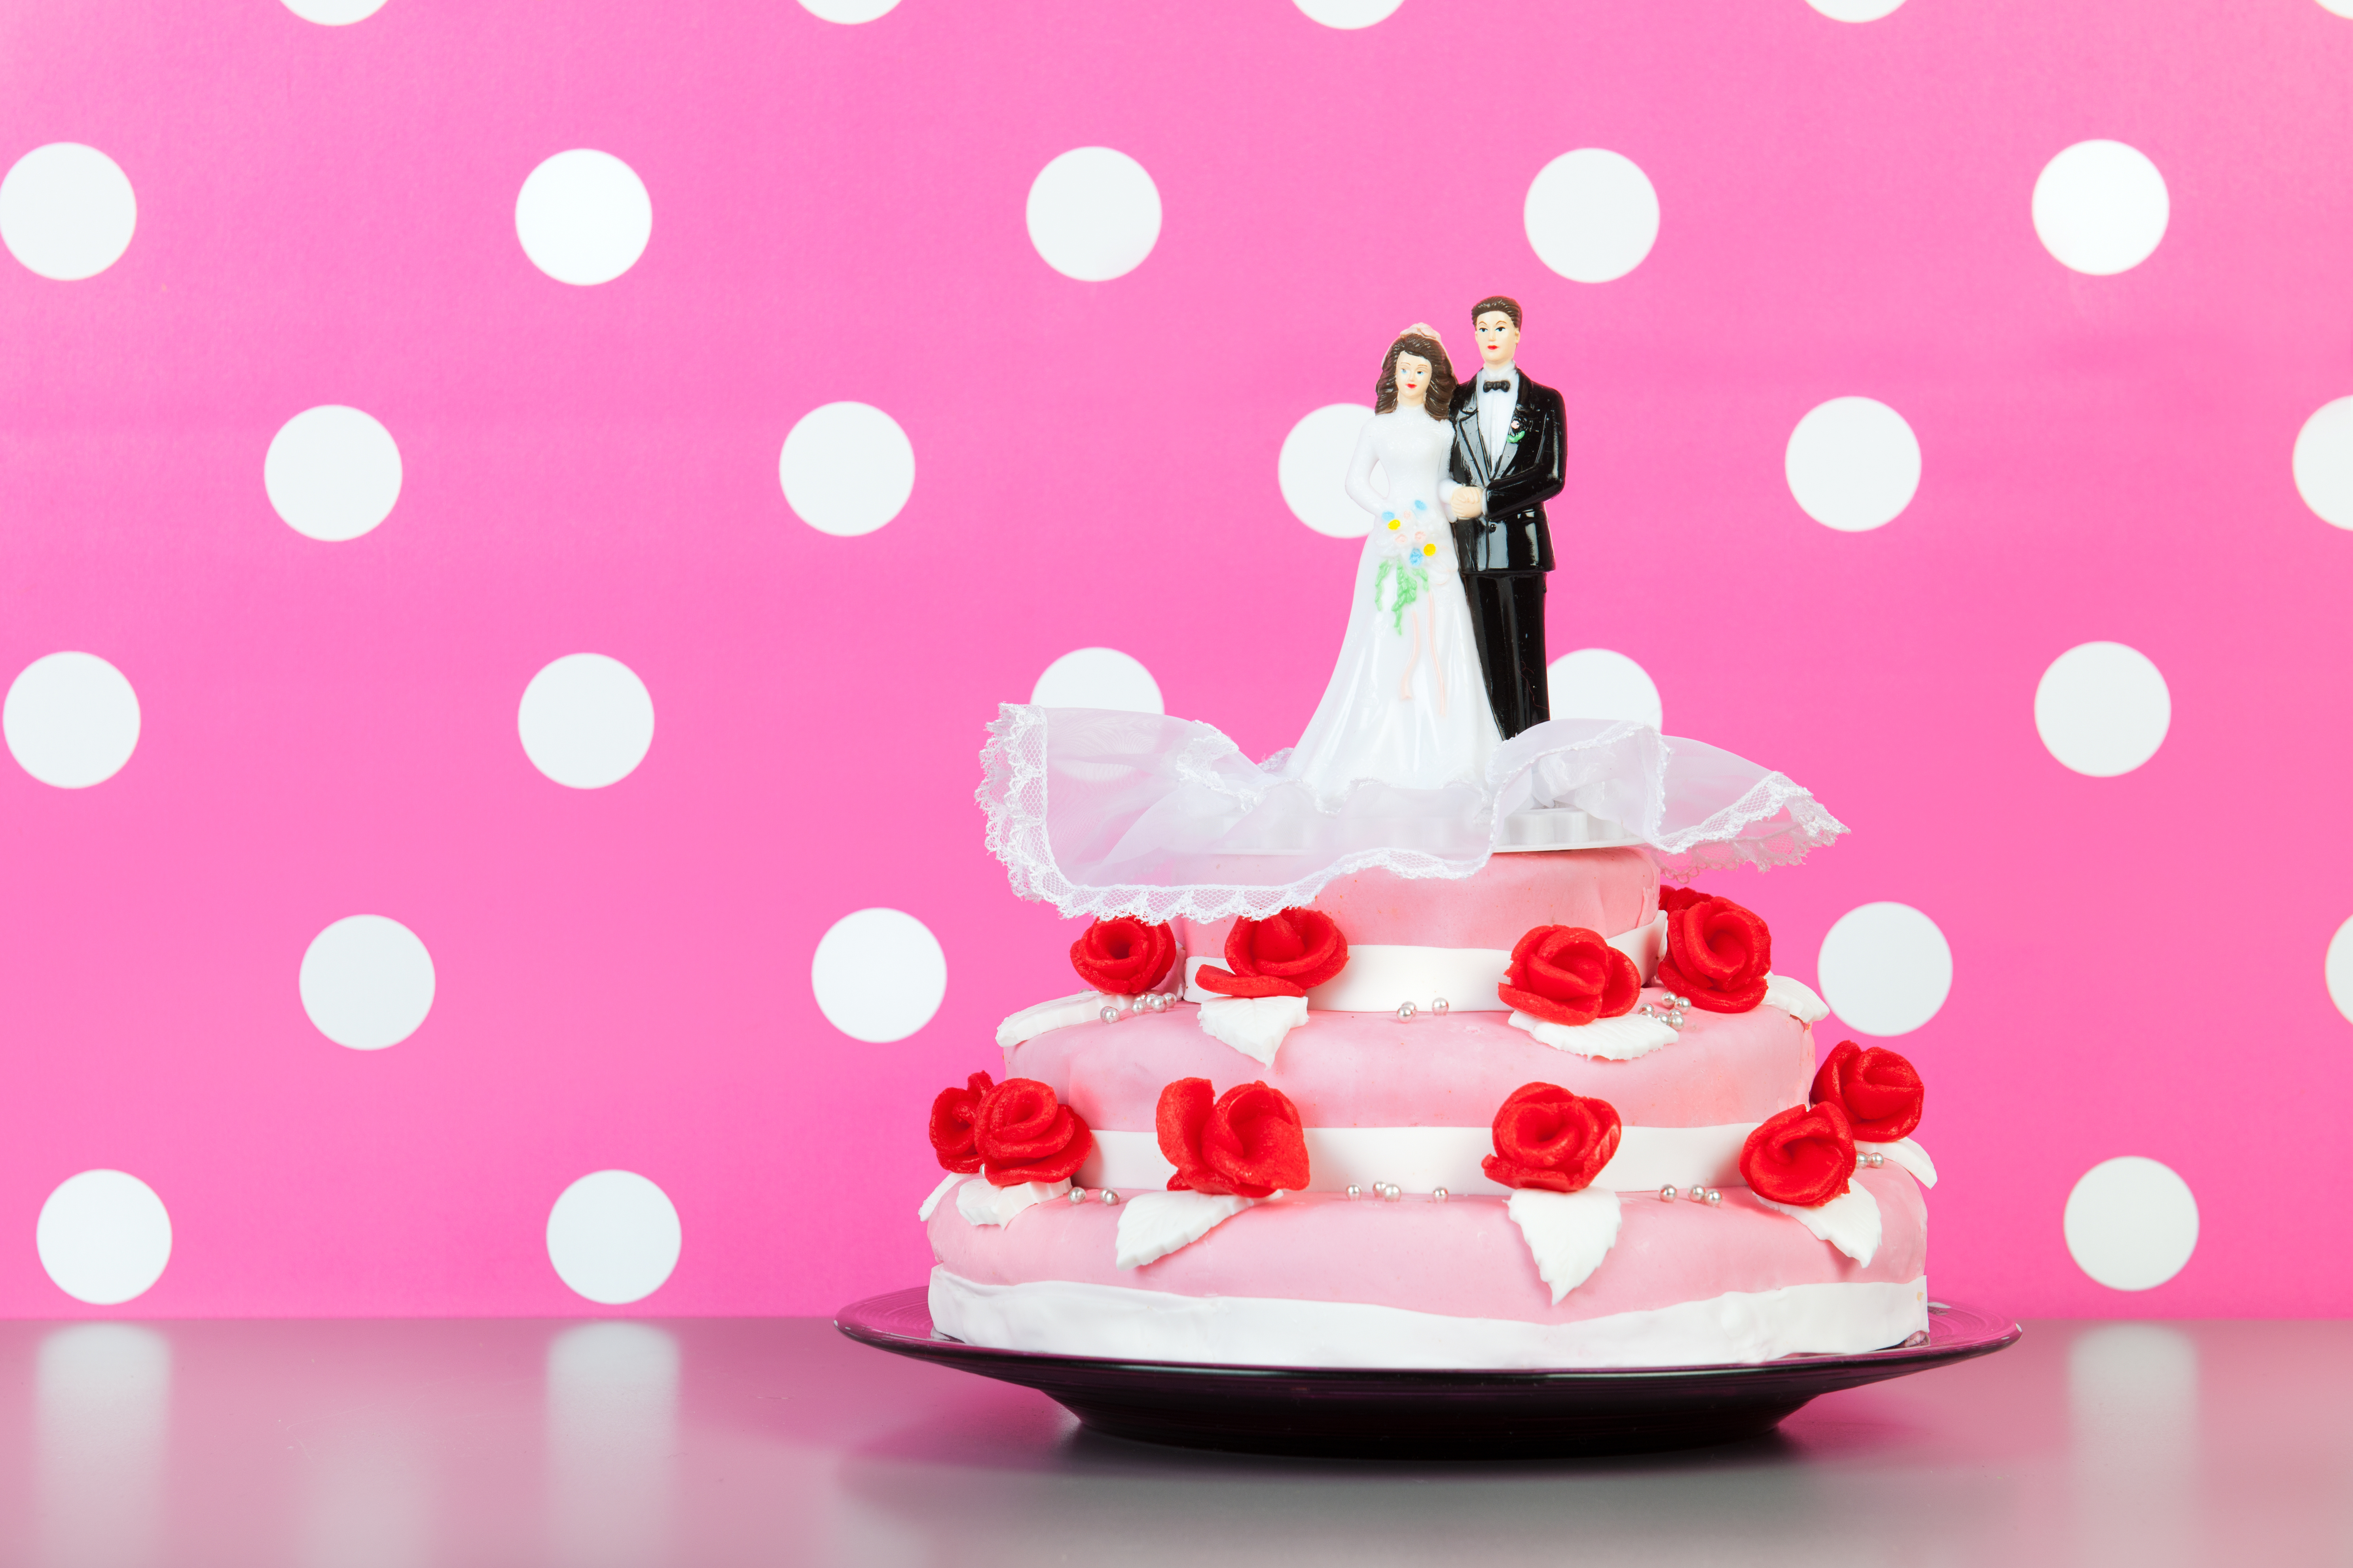 Couple on top of wedding cake